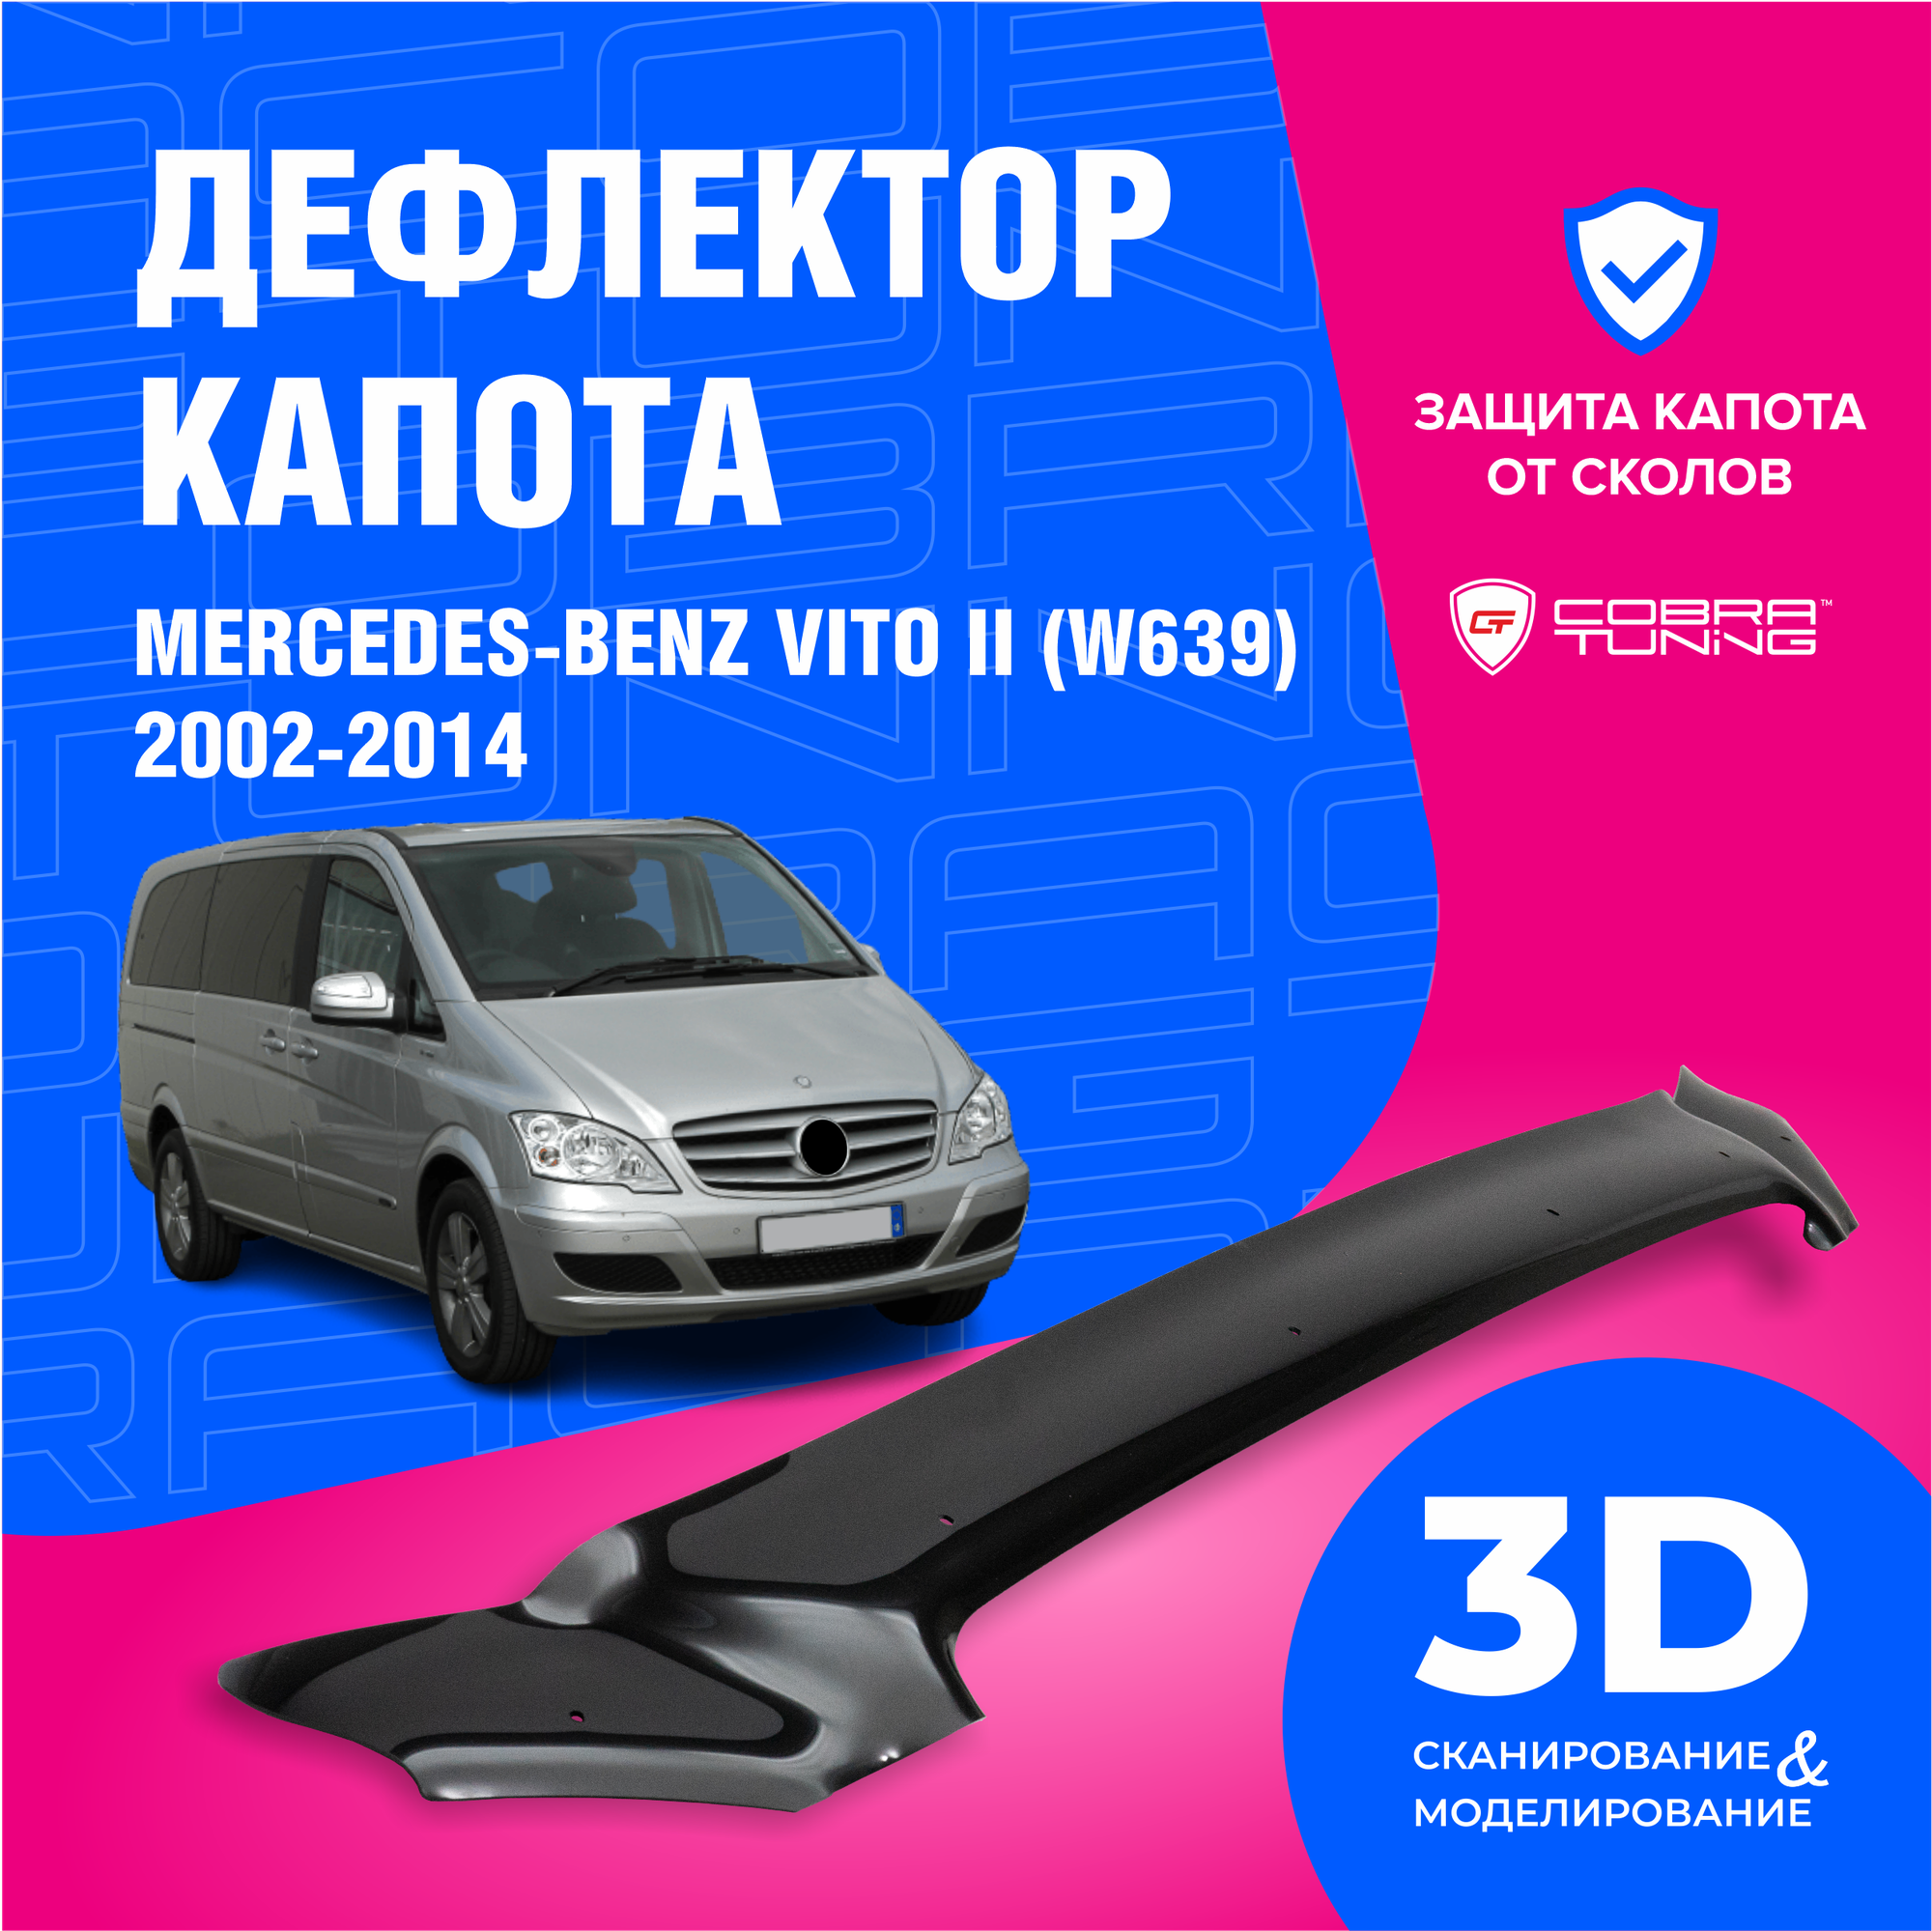 Дефлектор капота для автомобиля Mercedes-Benz Vito II W639 (Мерsедеs Бенц Вито 2) 2002-2014, мухобойка, защита от сколов, Cobra Tuning